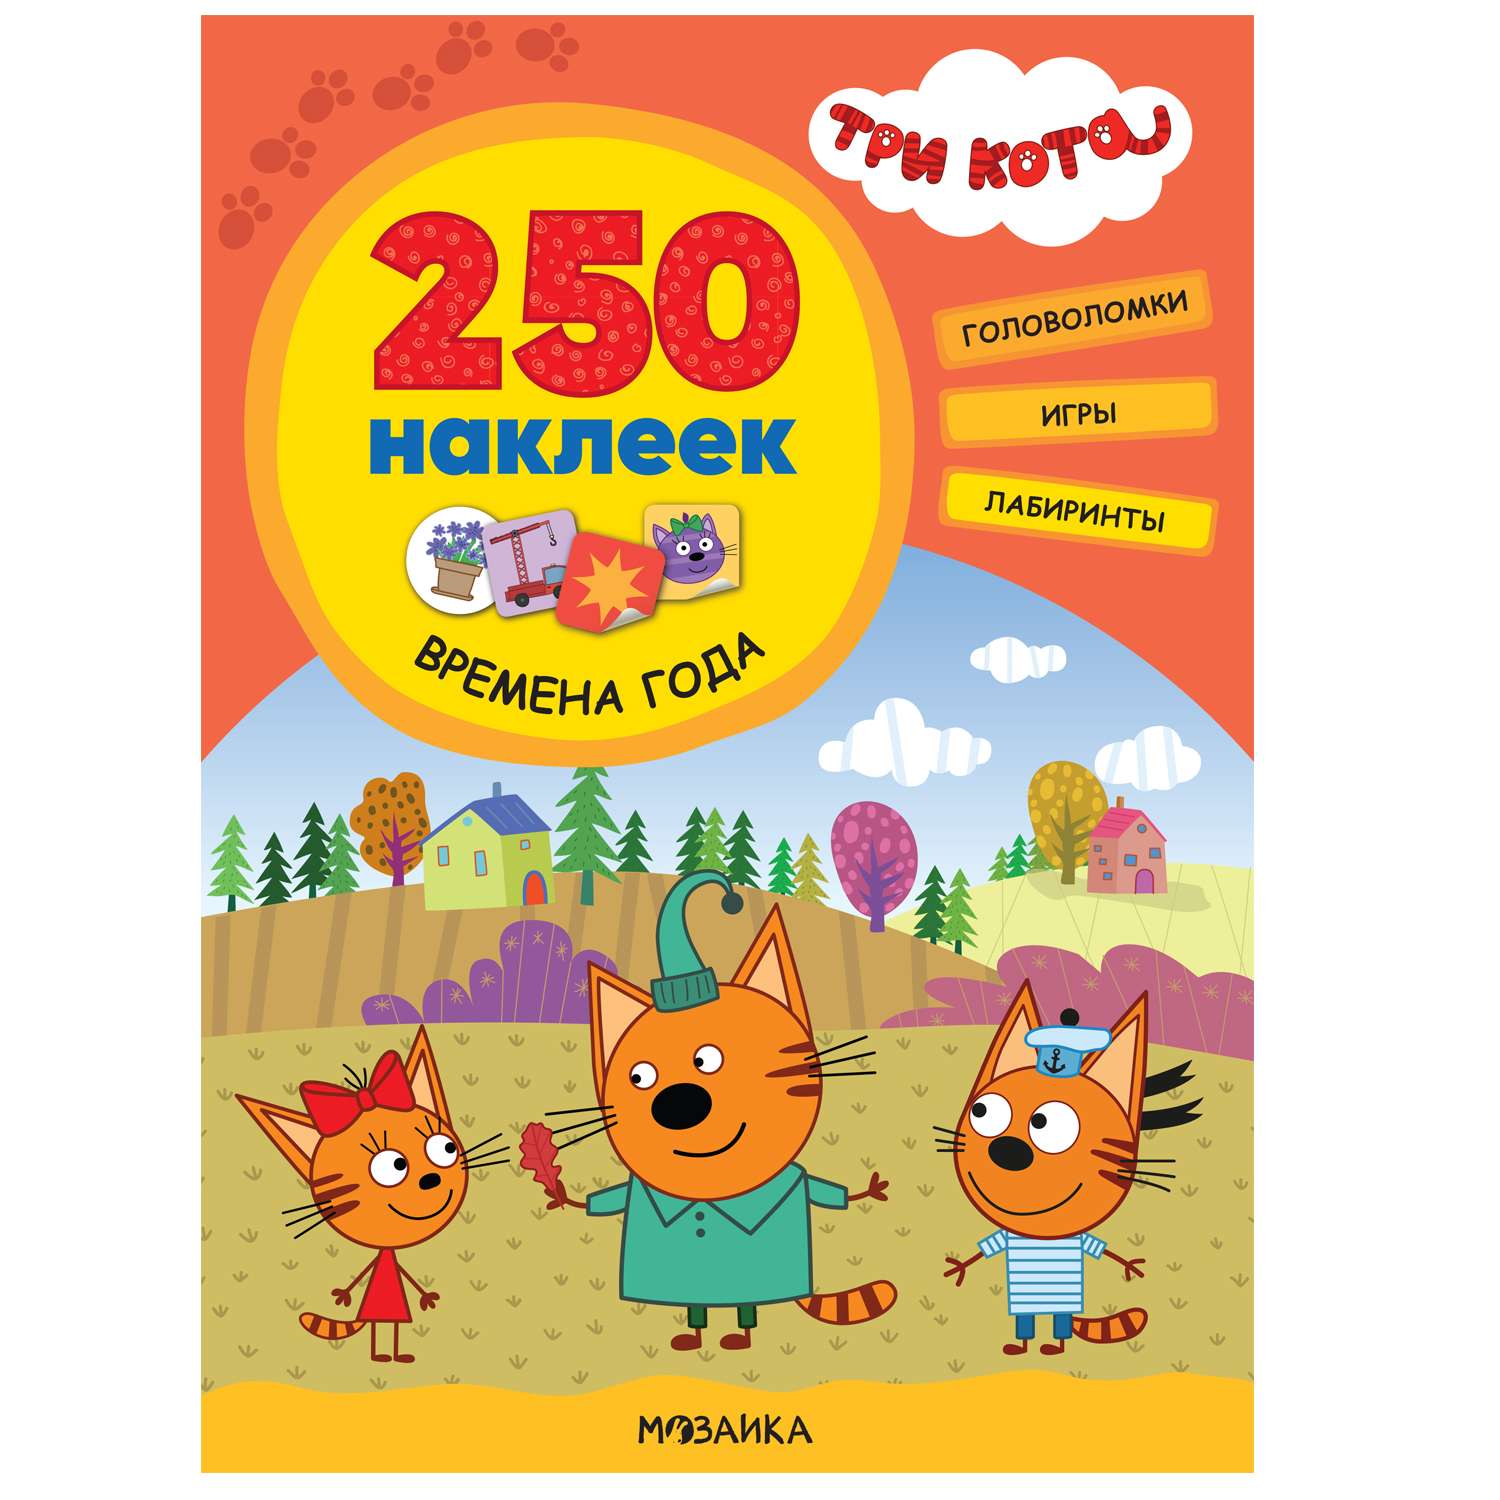 Книга МОЗАИКА kids Три кота 250 наклеек Времена года - фото 1